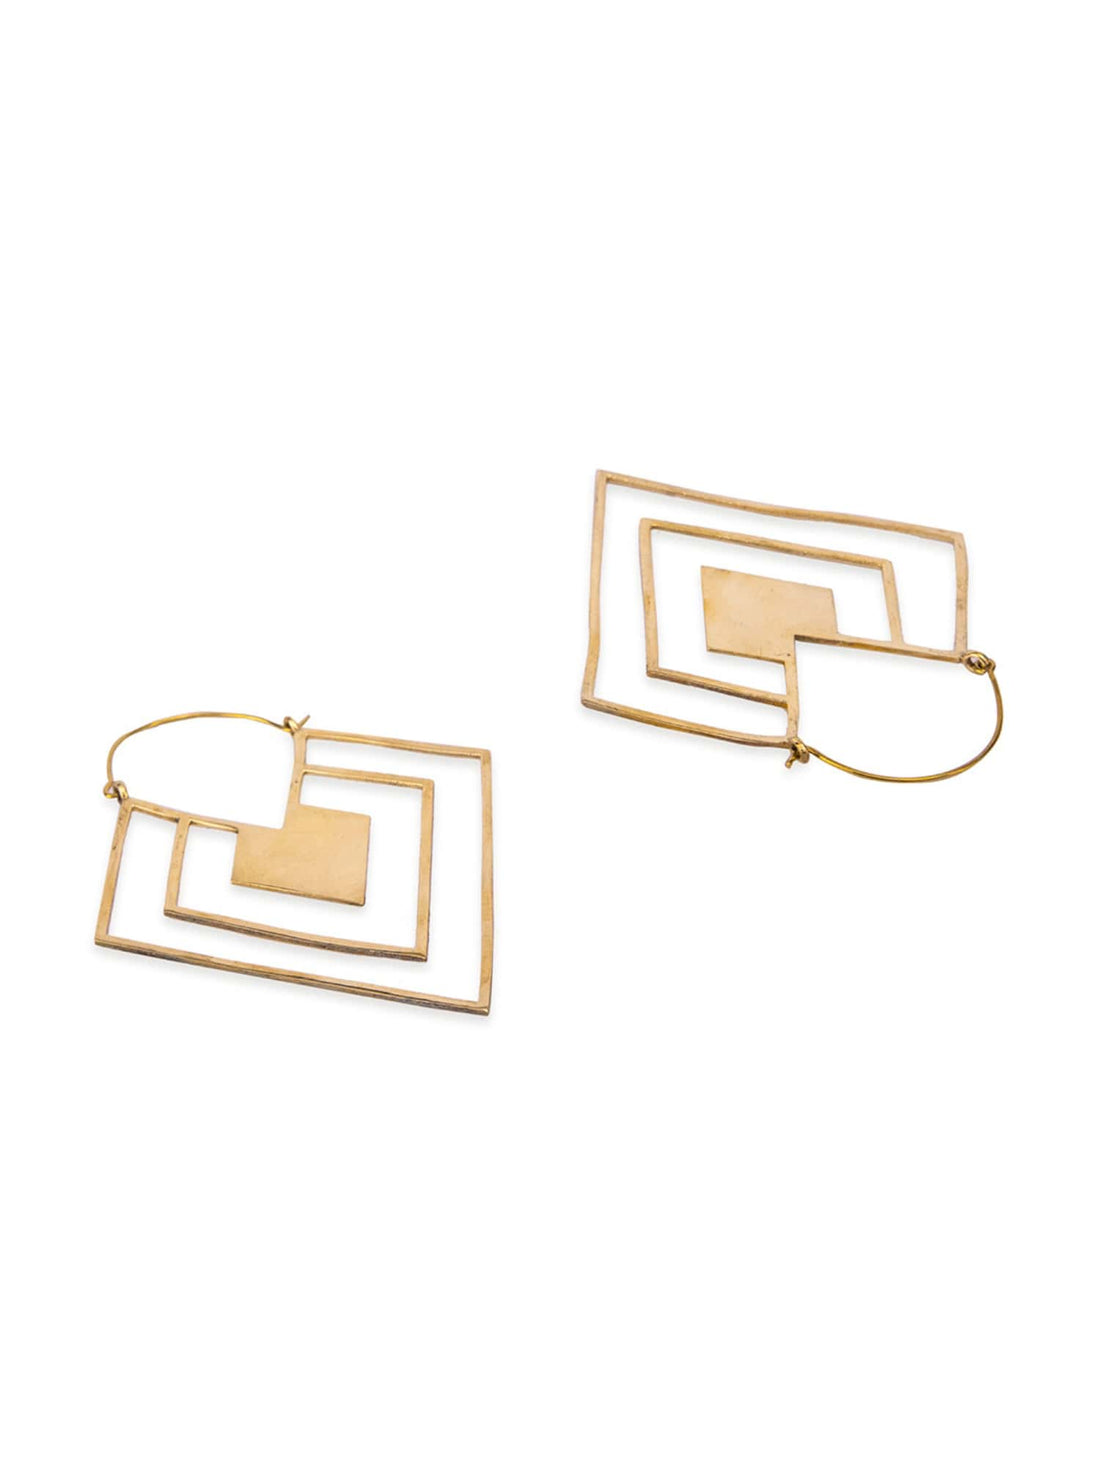 Party Wear Hoops Earrings - Statement Gold-Plated Brass Earrings By Studio One Love